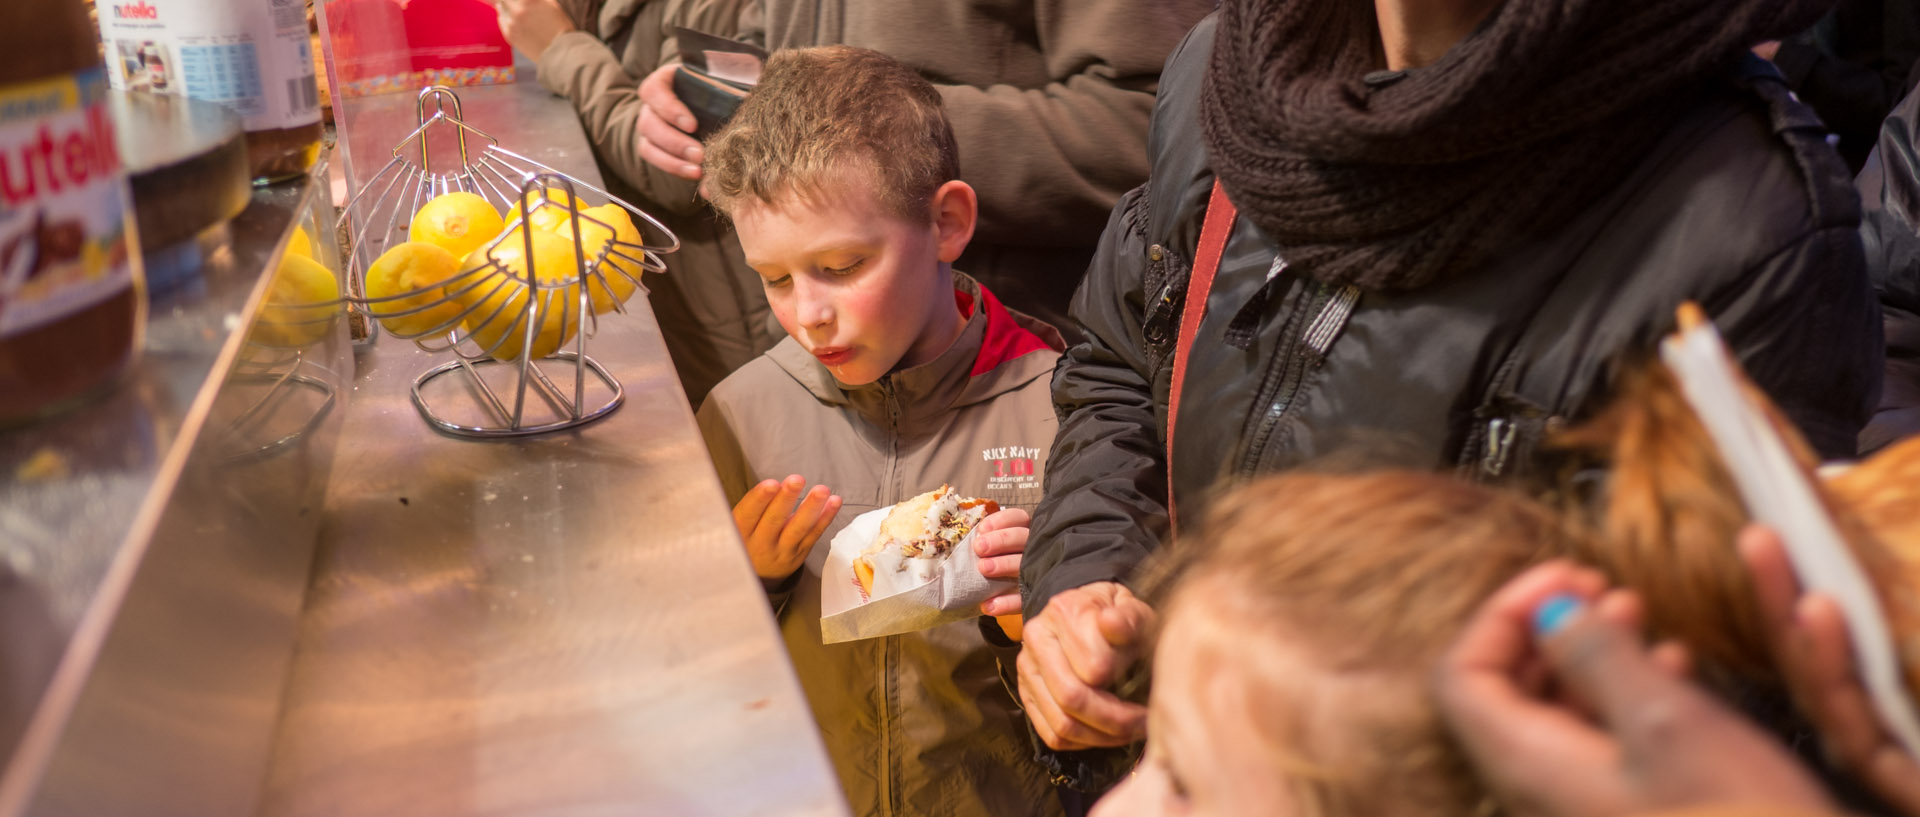 Enfant mangeant une gaufre dans le marché de Noël de Lille.